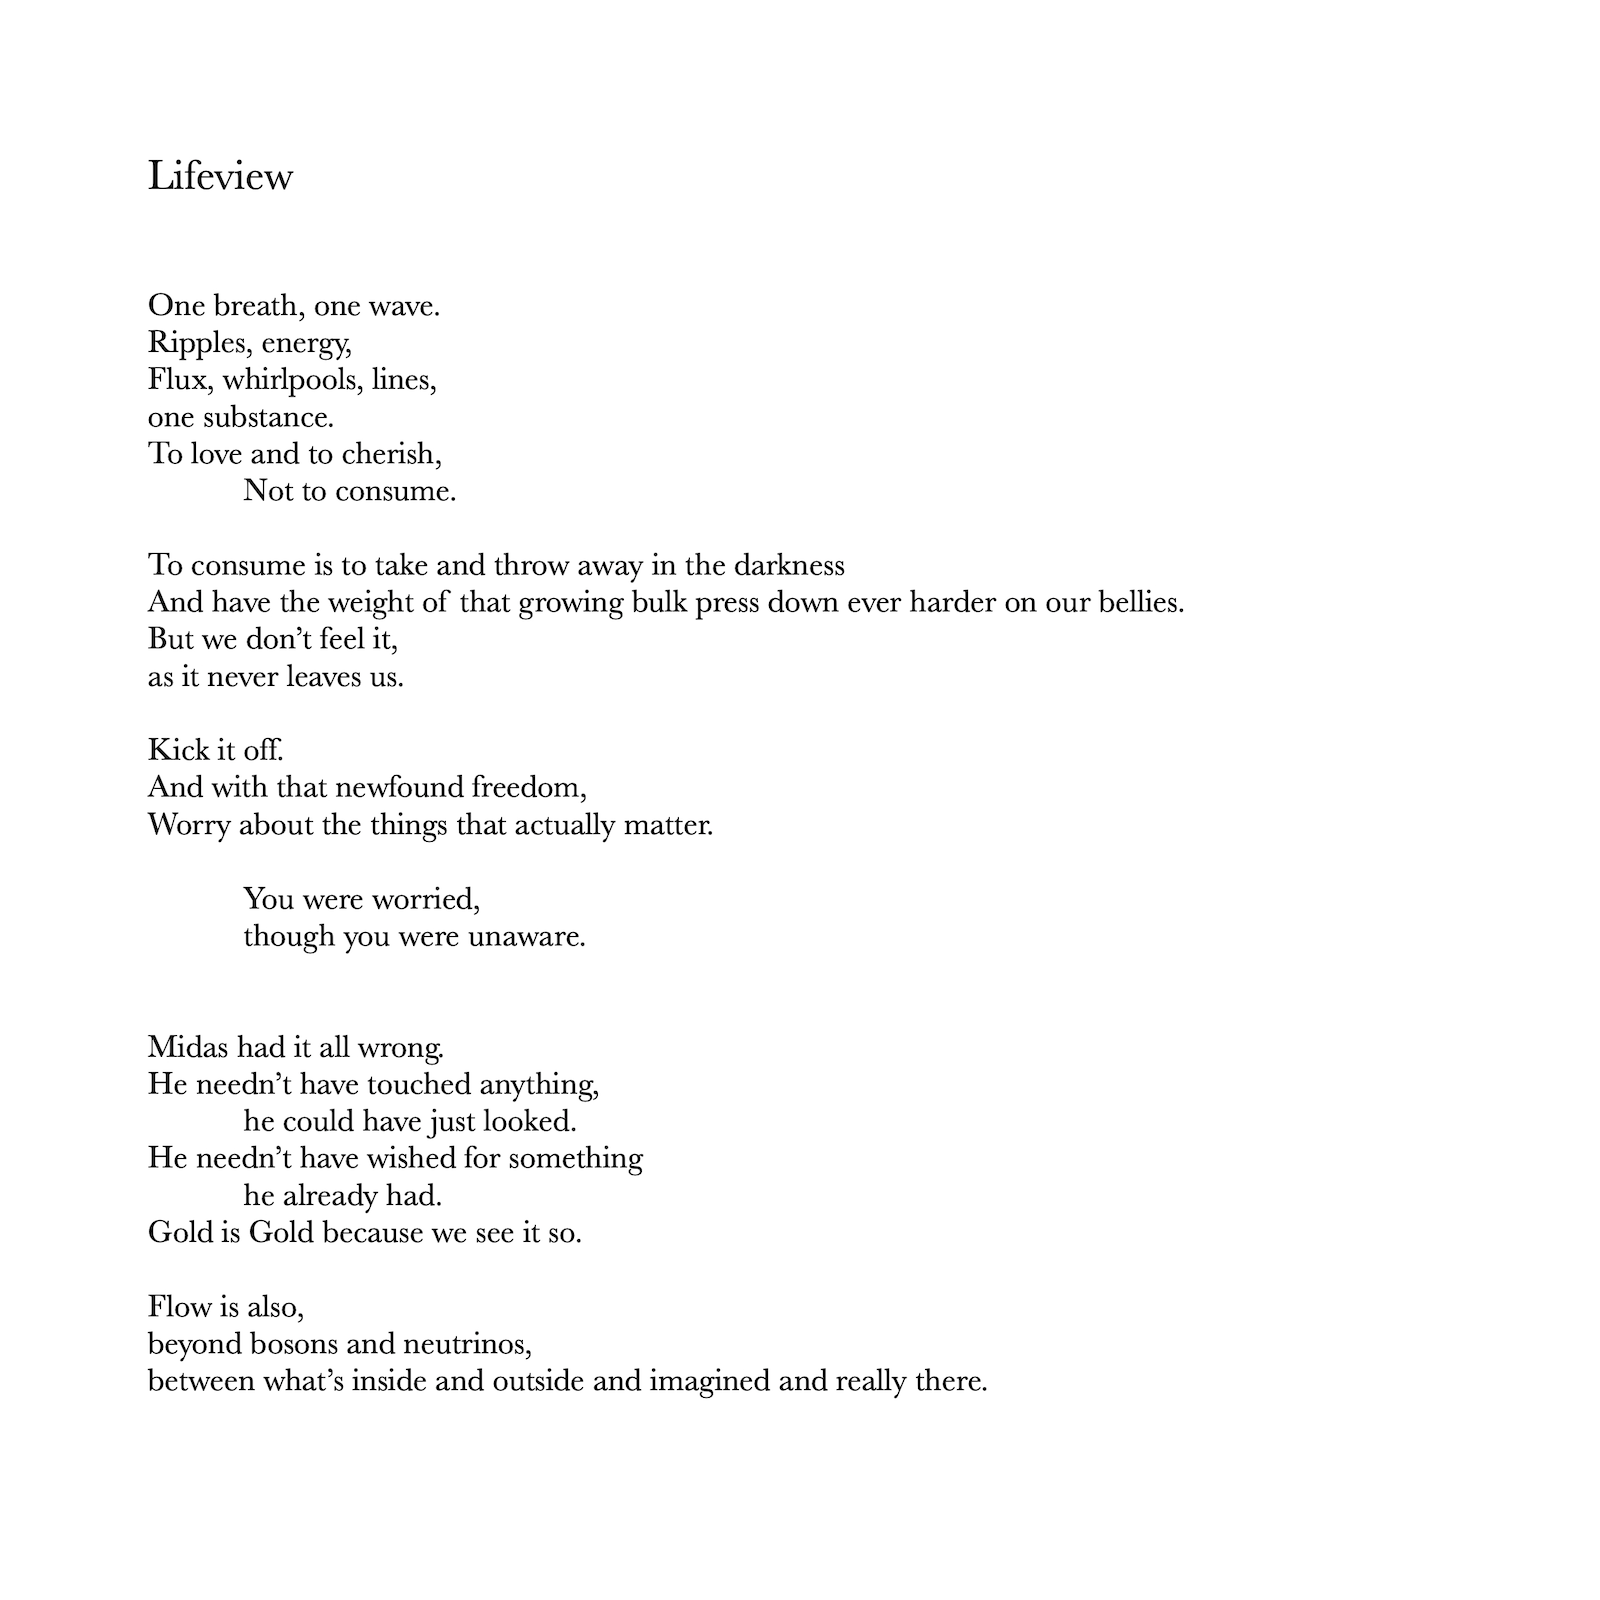 poem: lifeview